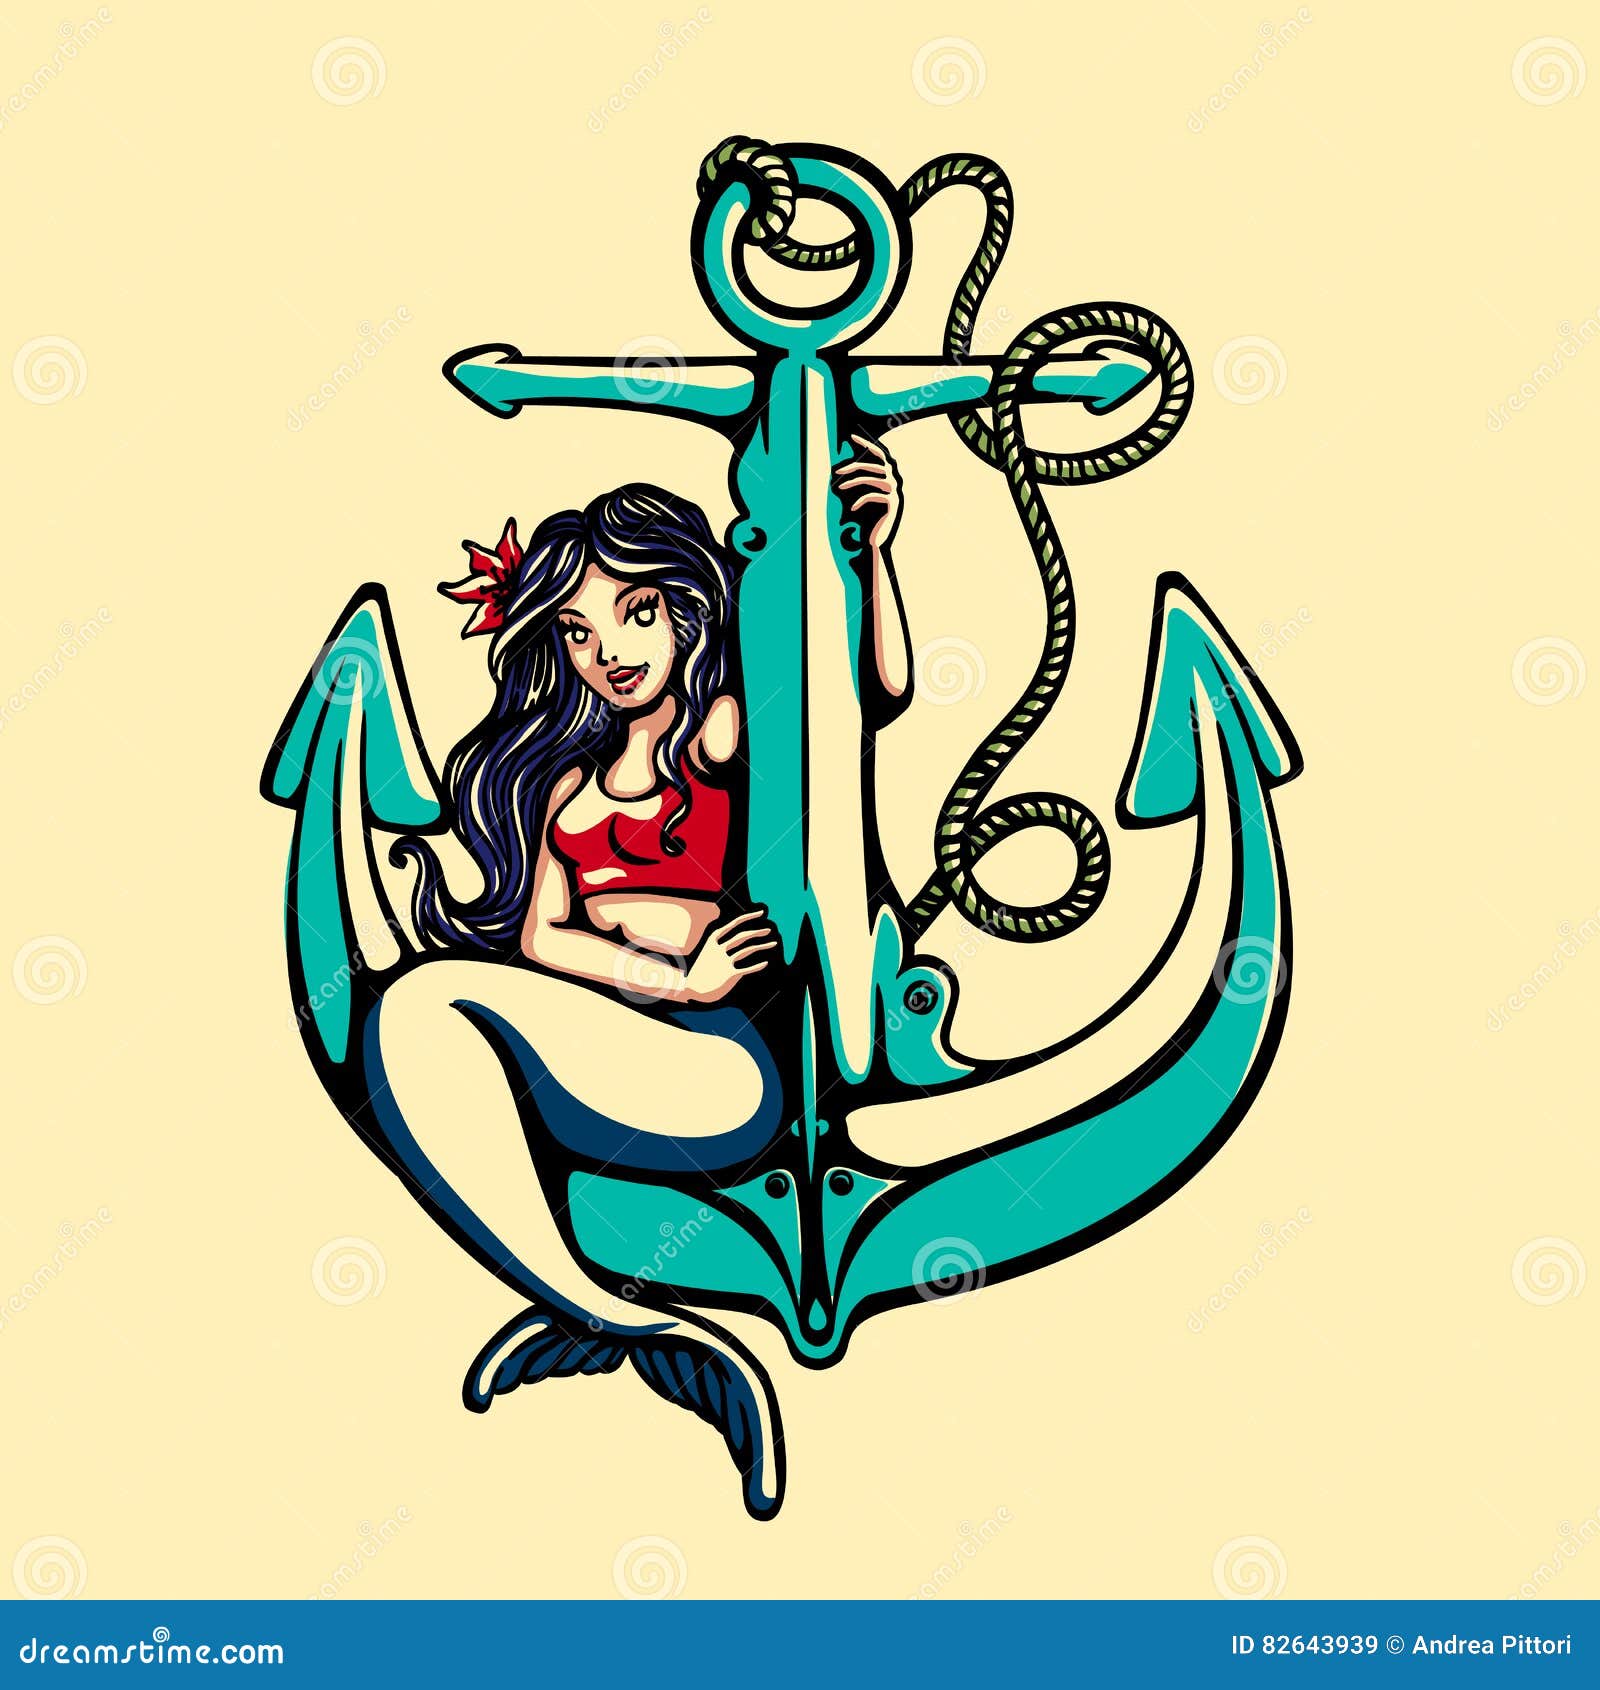 Mermaid Tattoo Stock Illustrations – 2,684 Mermaid Tattoo Stock  Illustrations, Vectors & Clipart - Dreamstime